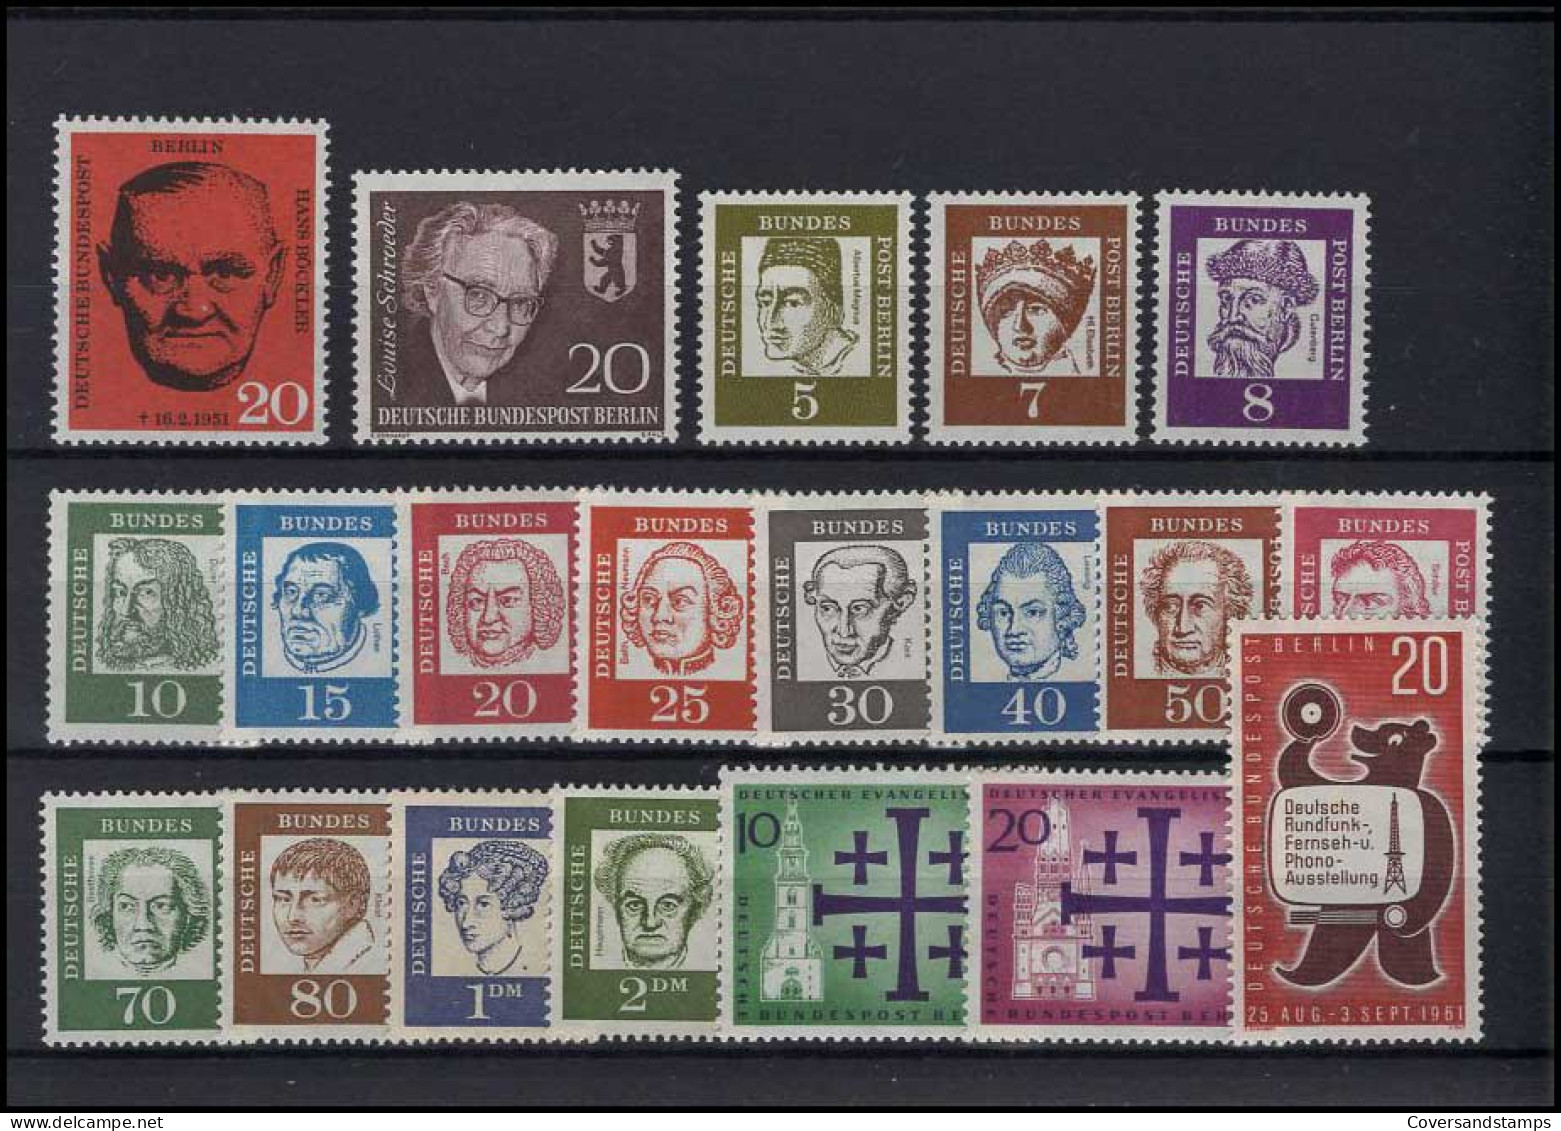   Bundespost Berlin - Volledig Jaar / Jahrgang 1961  MNH - Unused Stamps